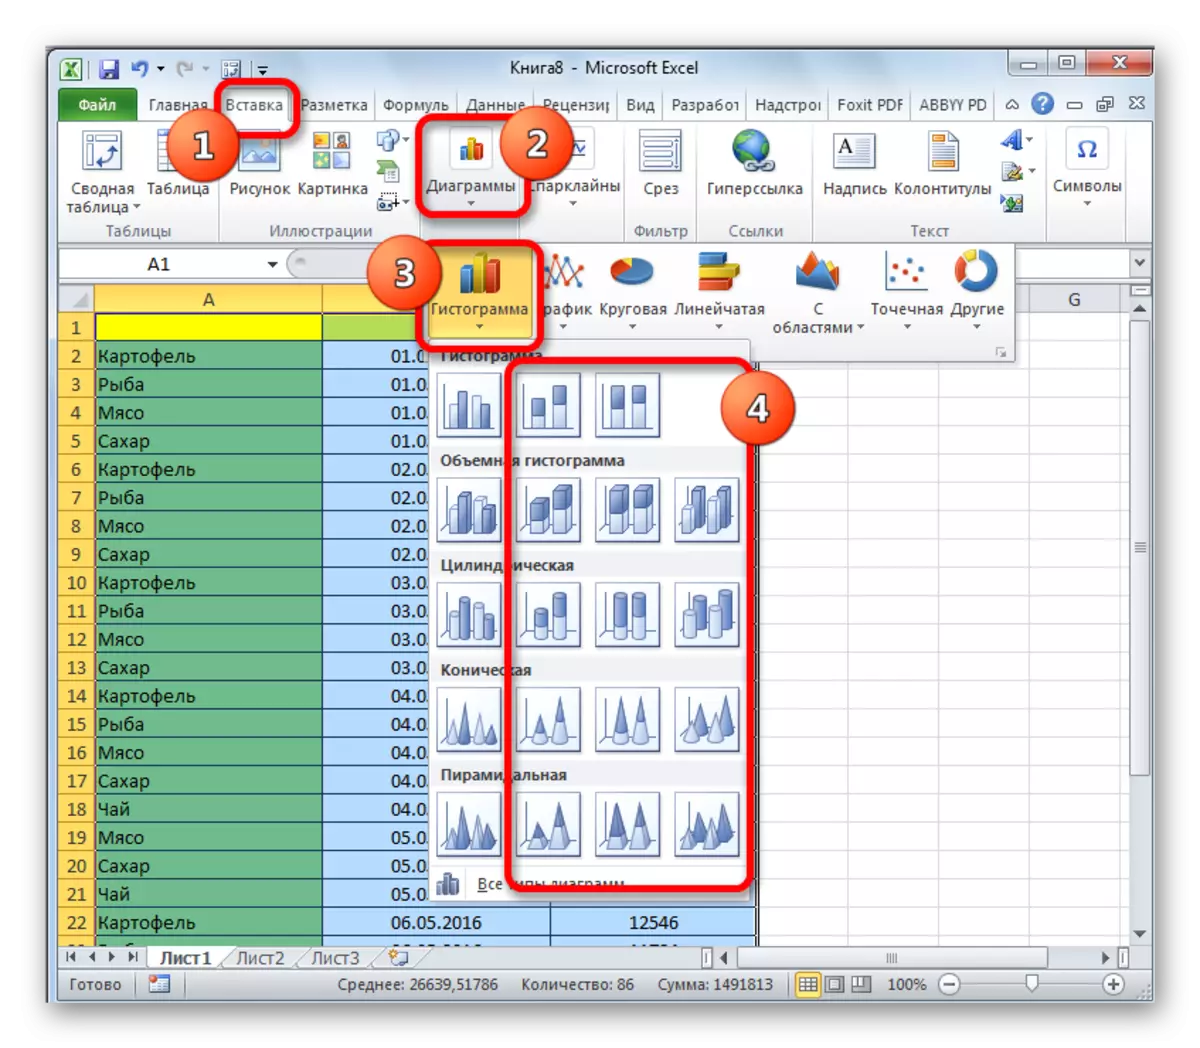 יצירת היסטוגרמה עם הצטברות ב- Microsoft Excel